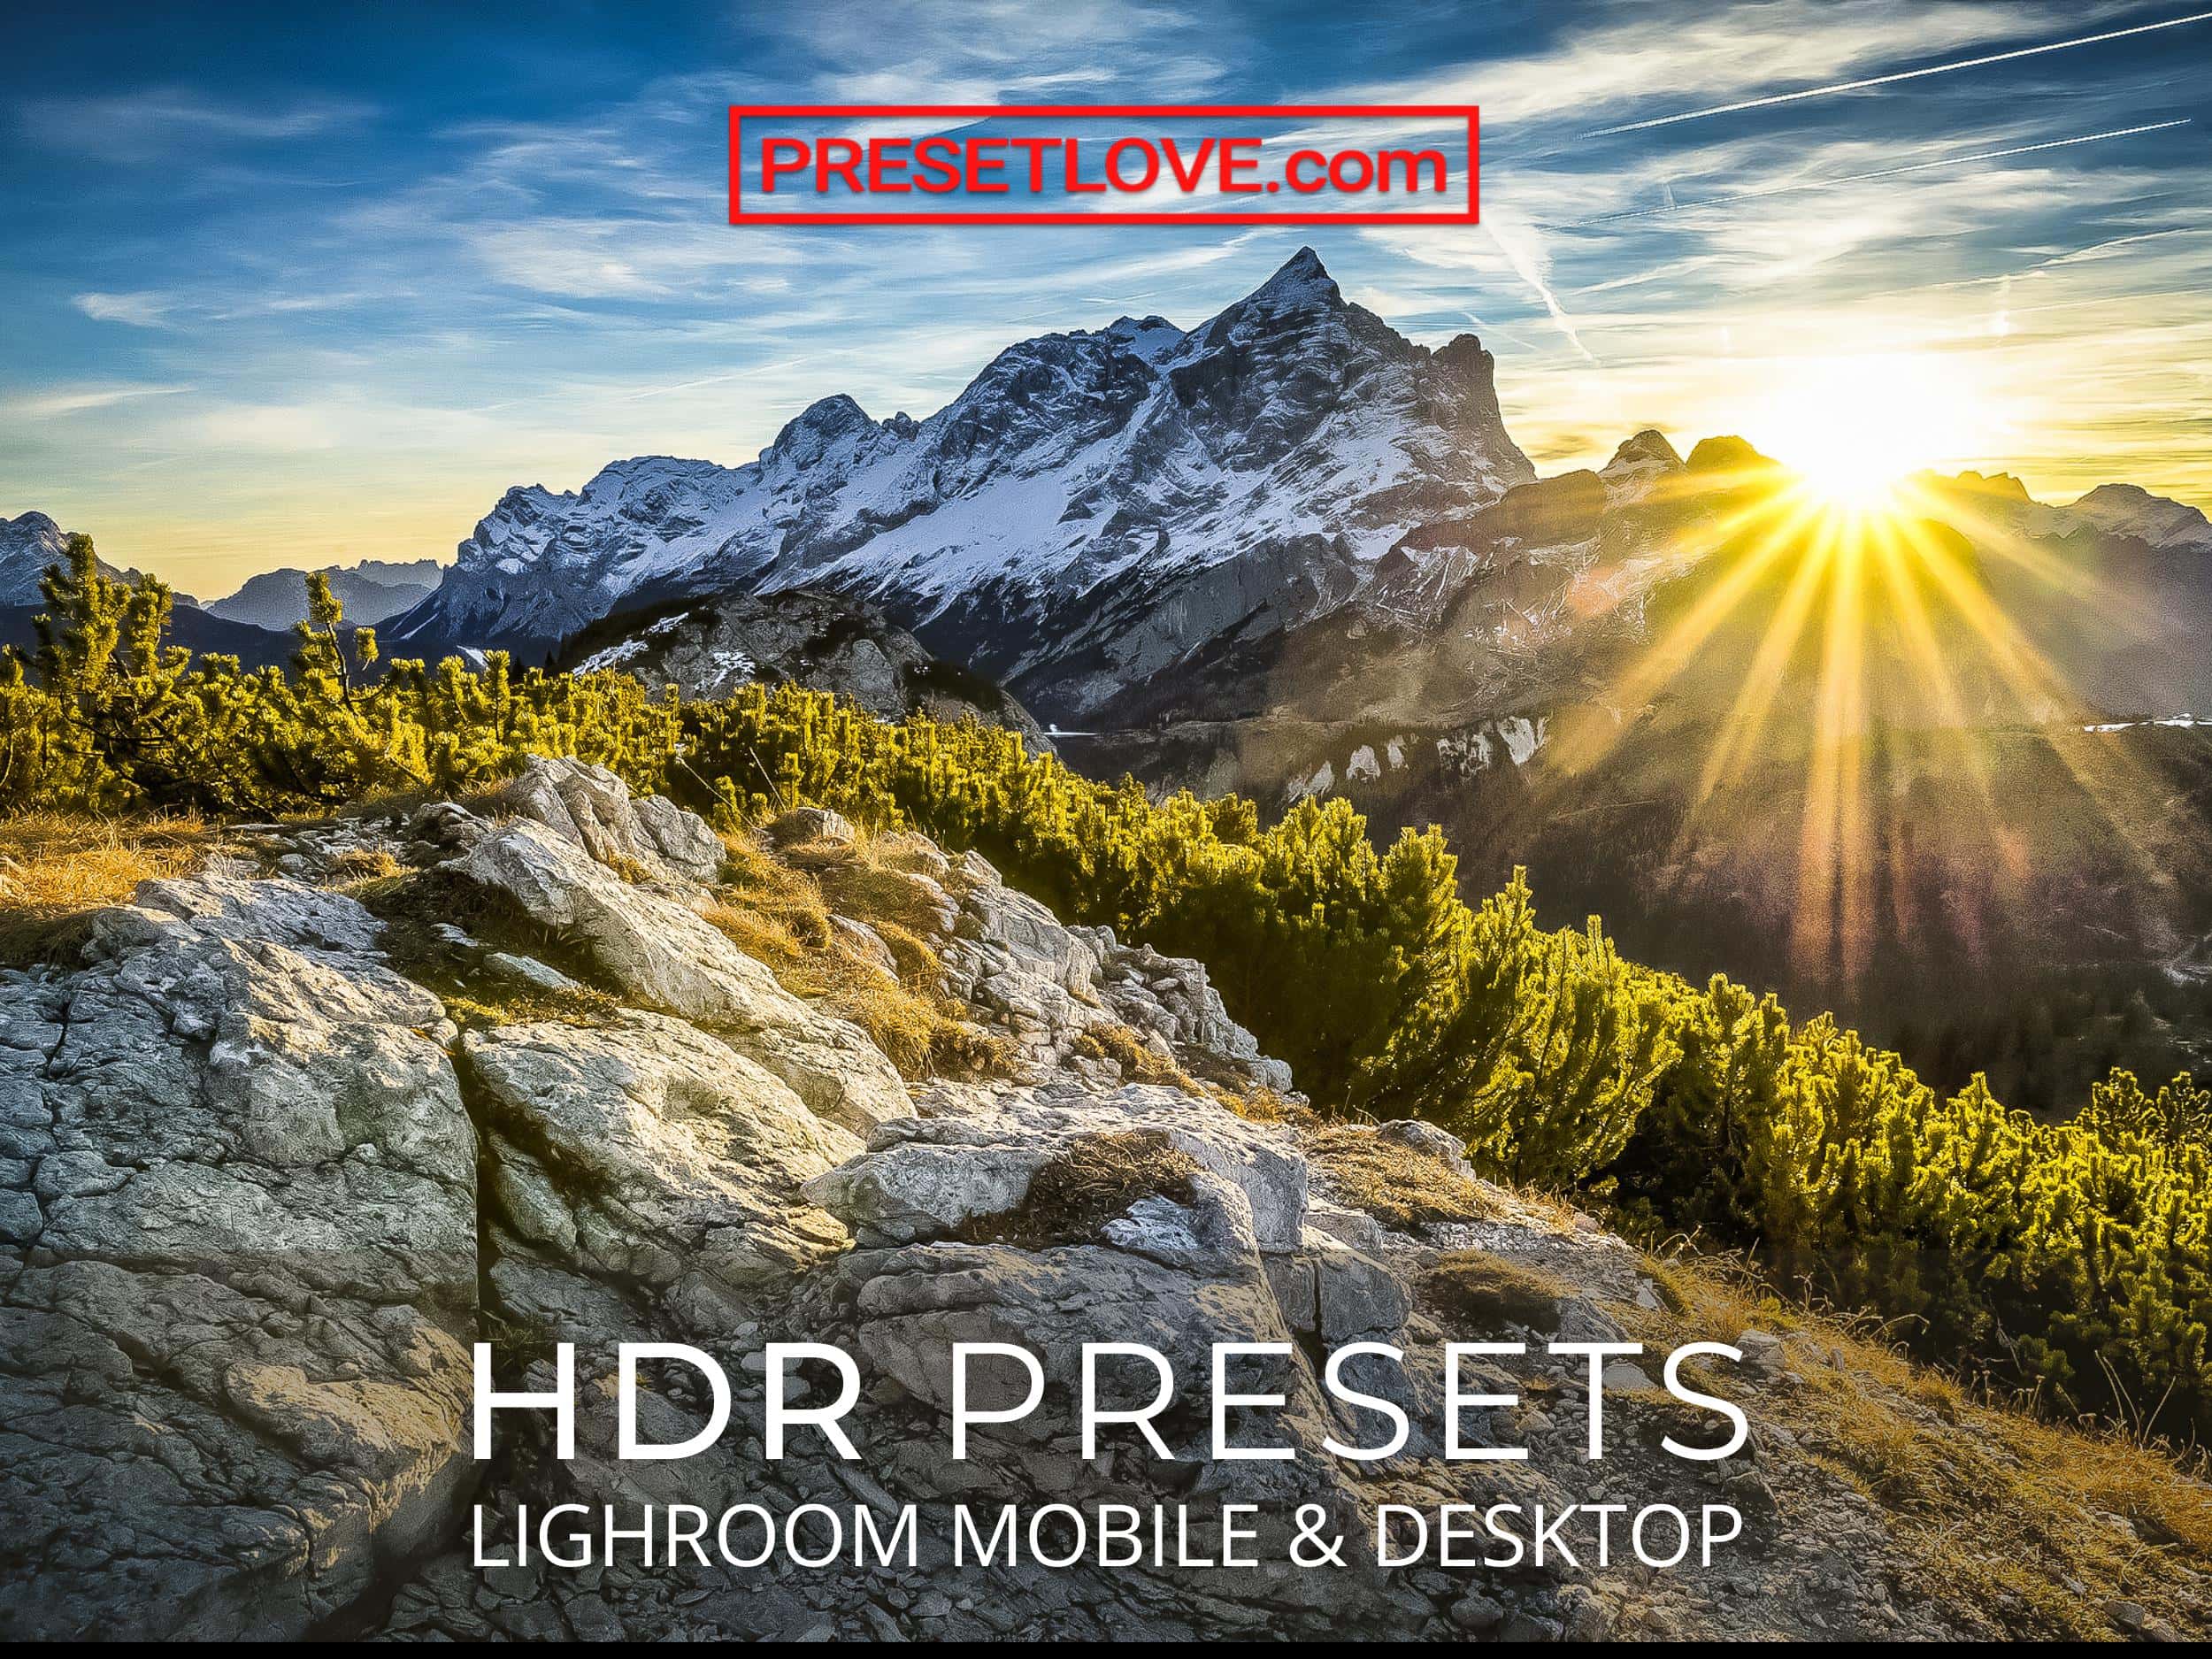 9 Free Hdr Preset S For Lightroom, Lightroom Landscape Presets Free